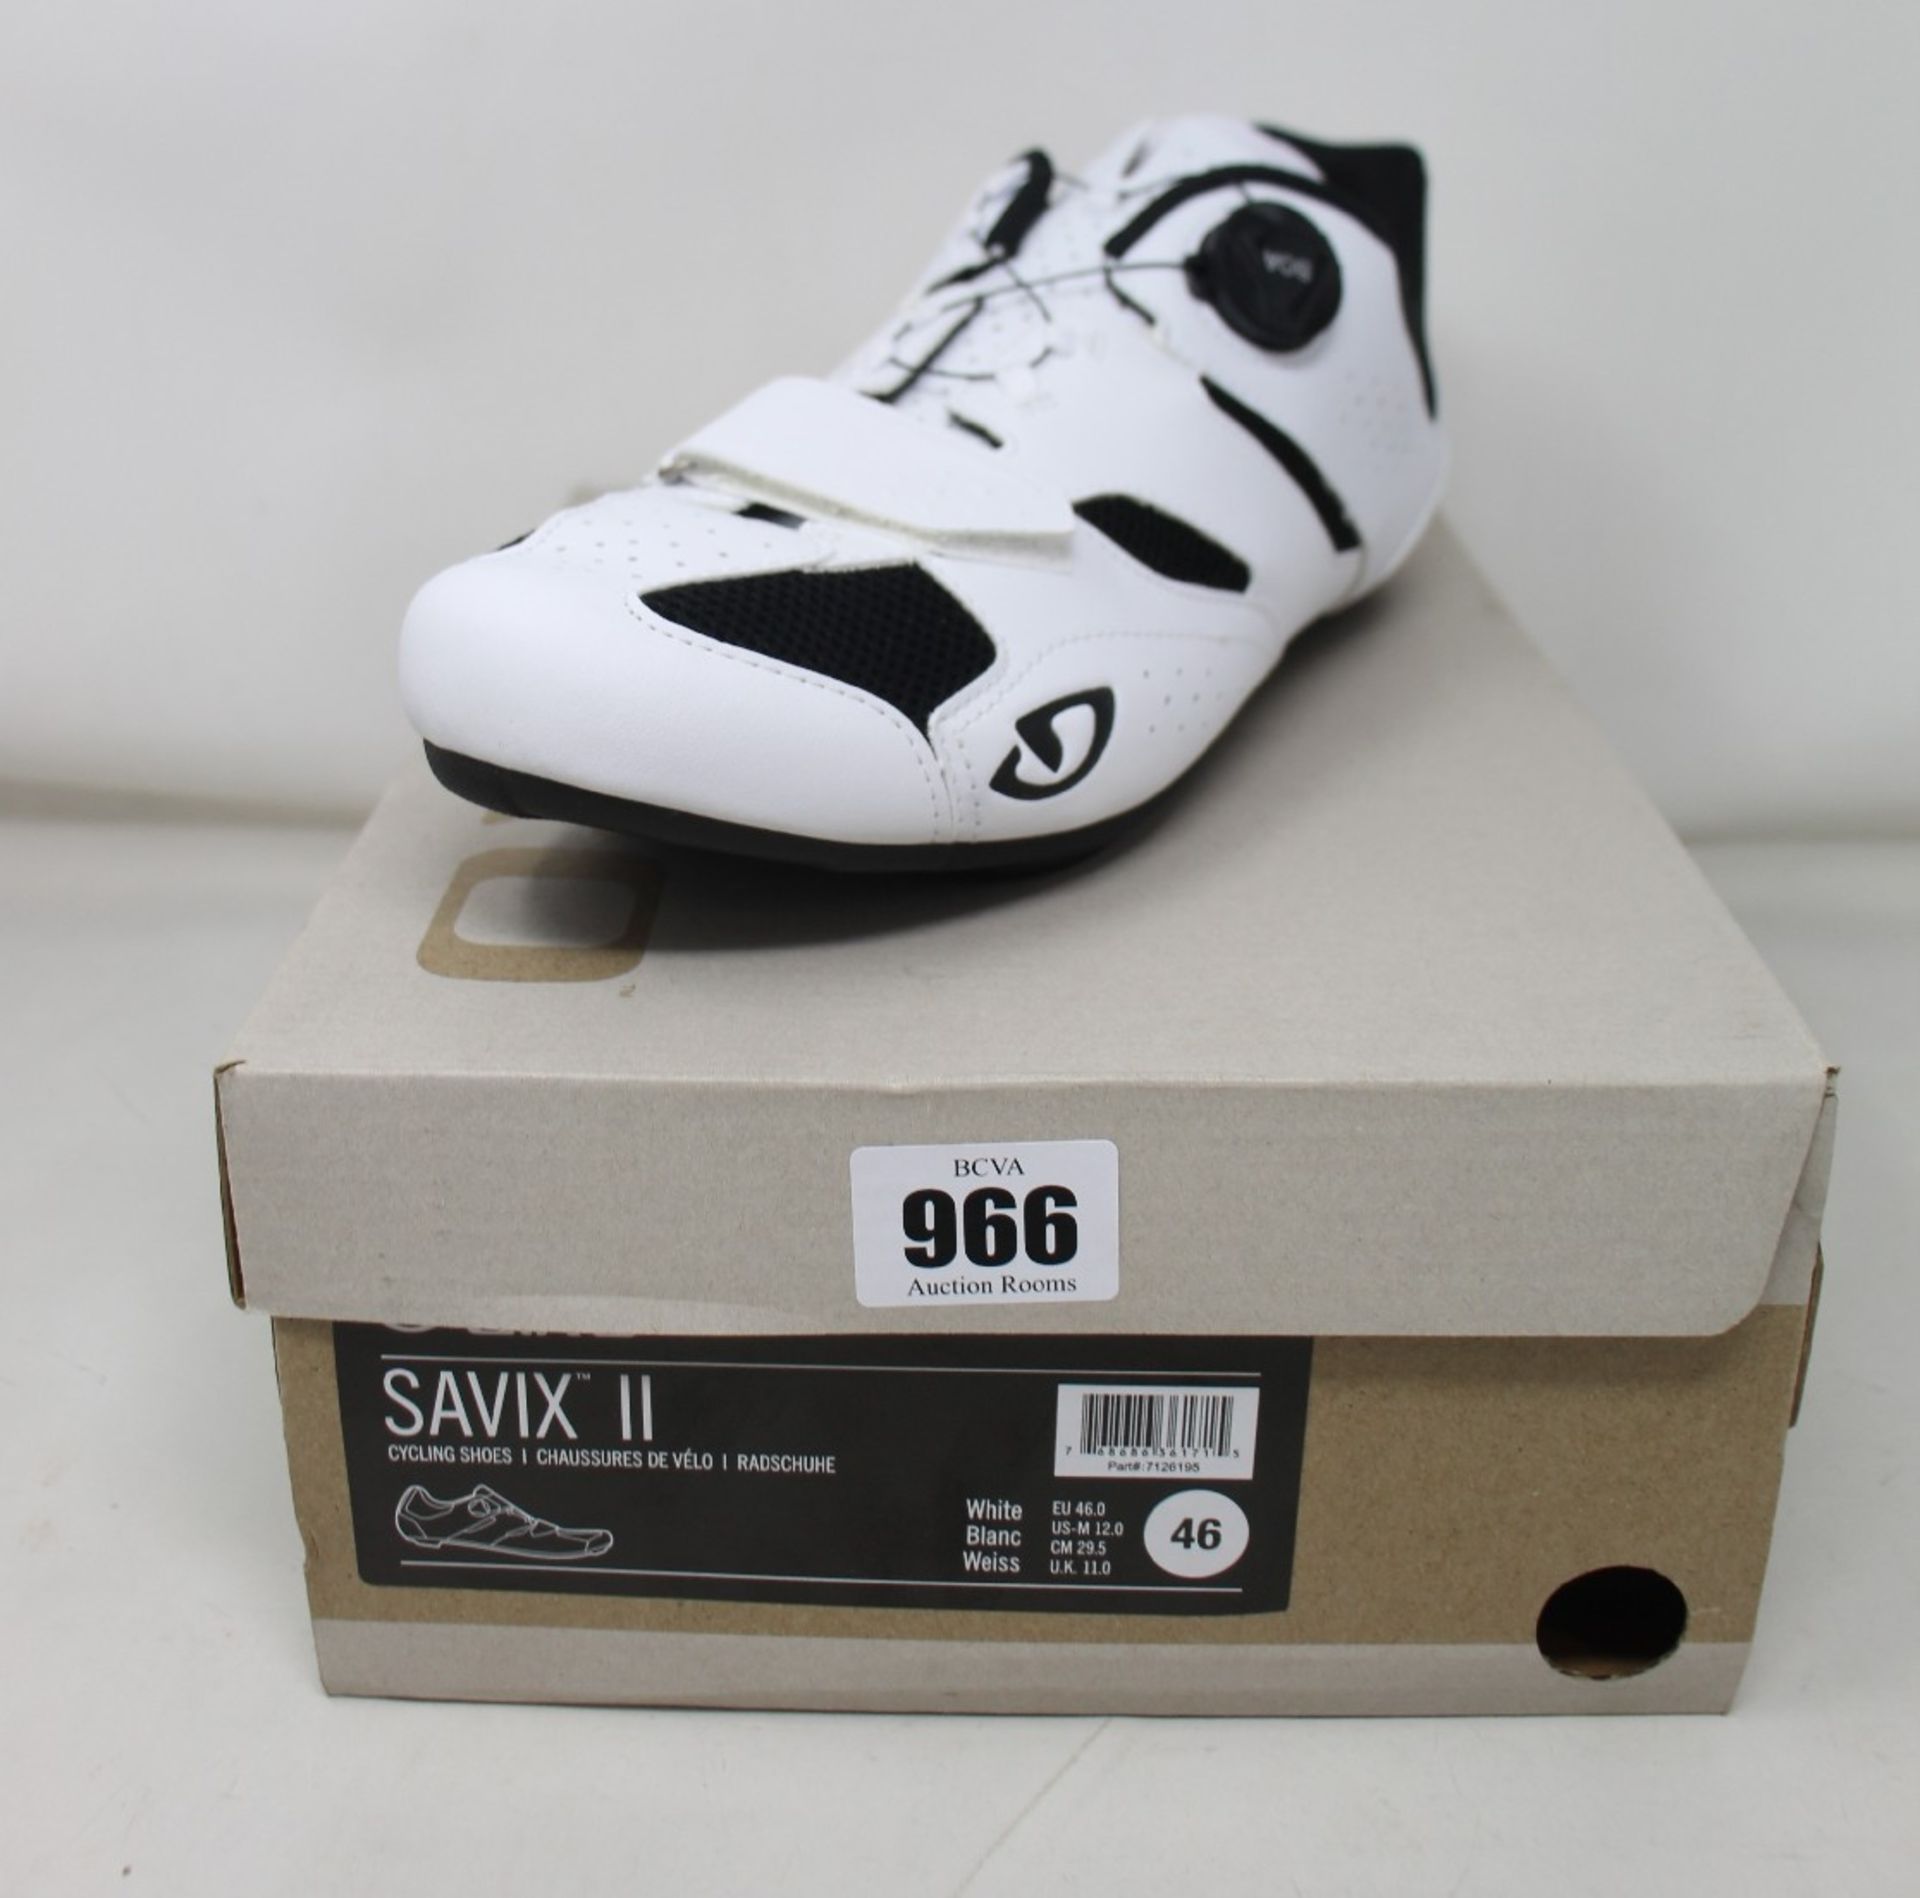 A pair of as new Giro Savix II cycling shoes (UK 11).